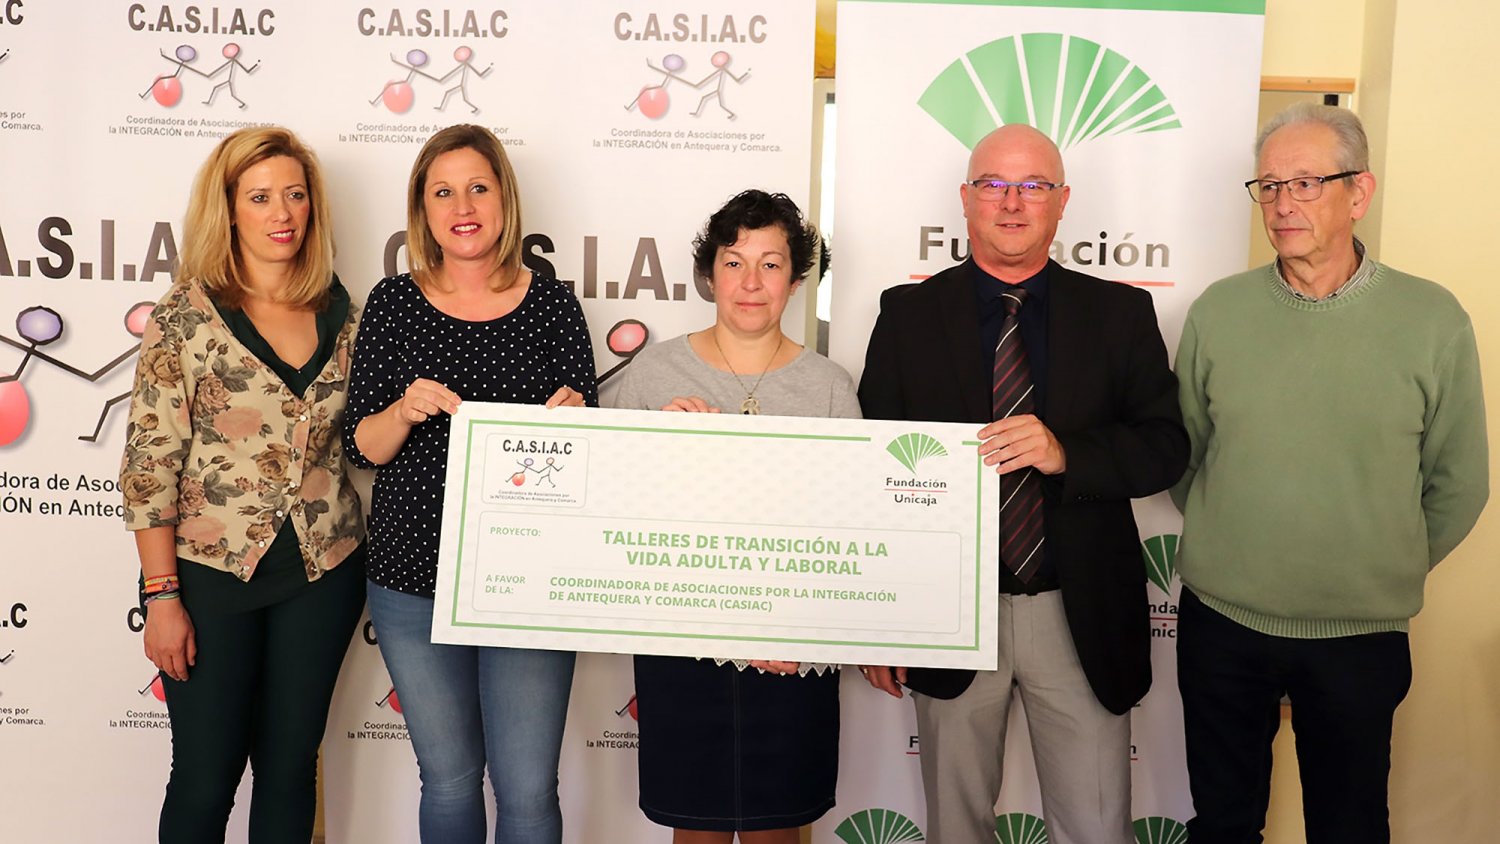 Fundación Unicaja apoya a CASIAC en su taller de Transición a la vida adulta